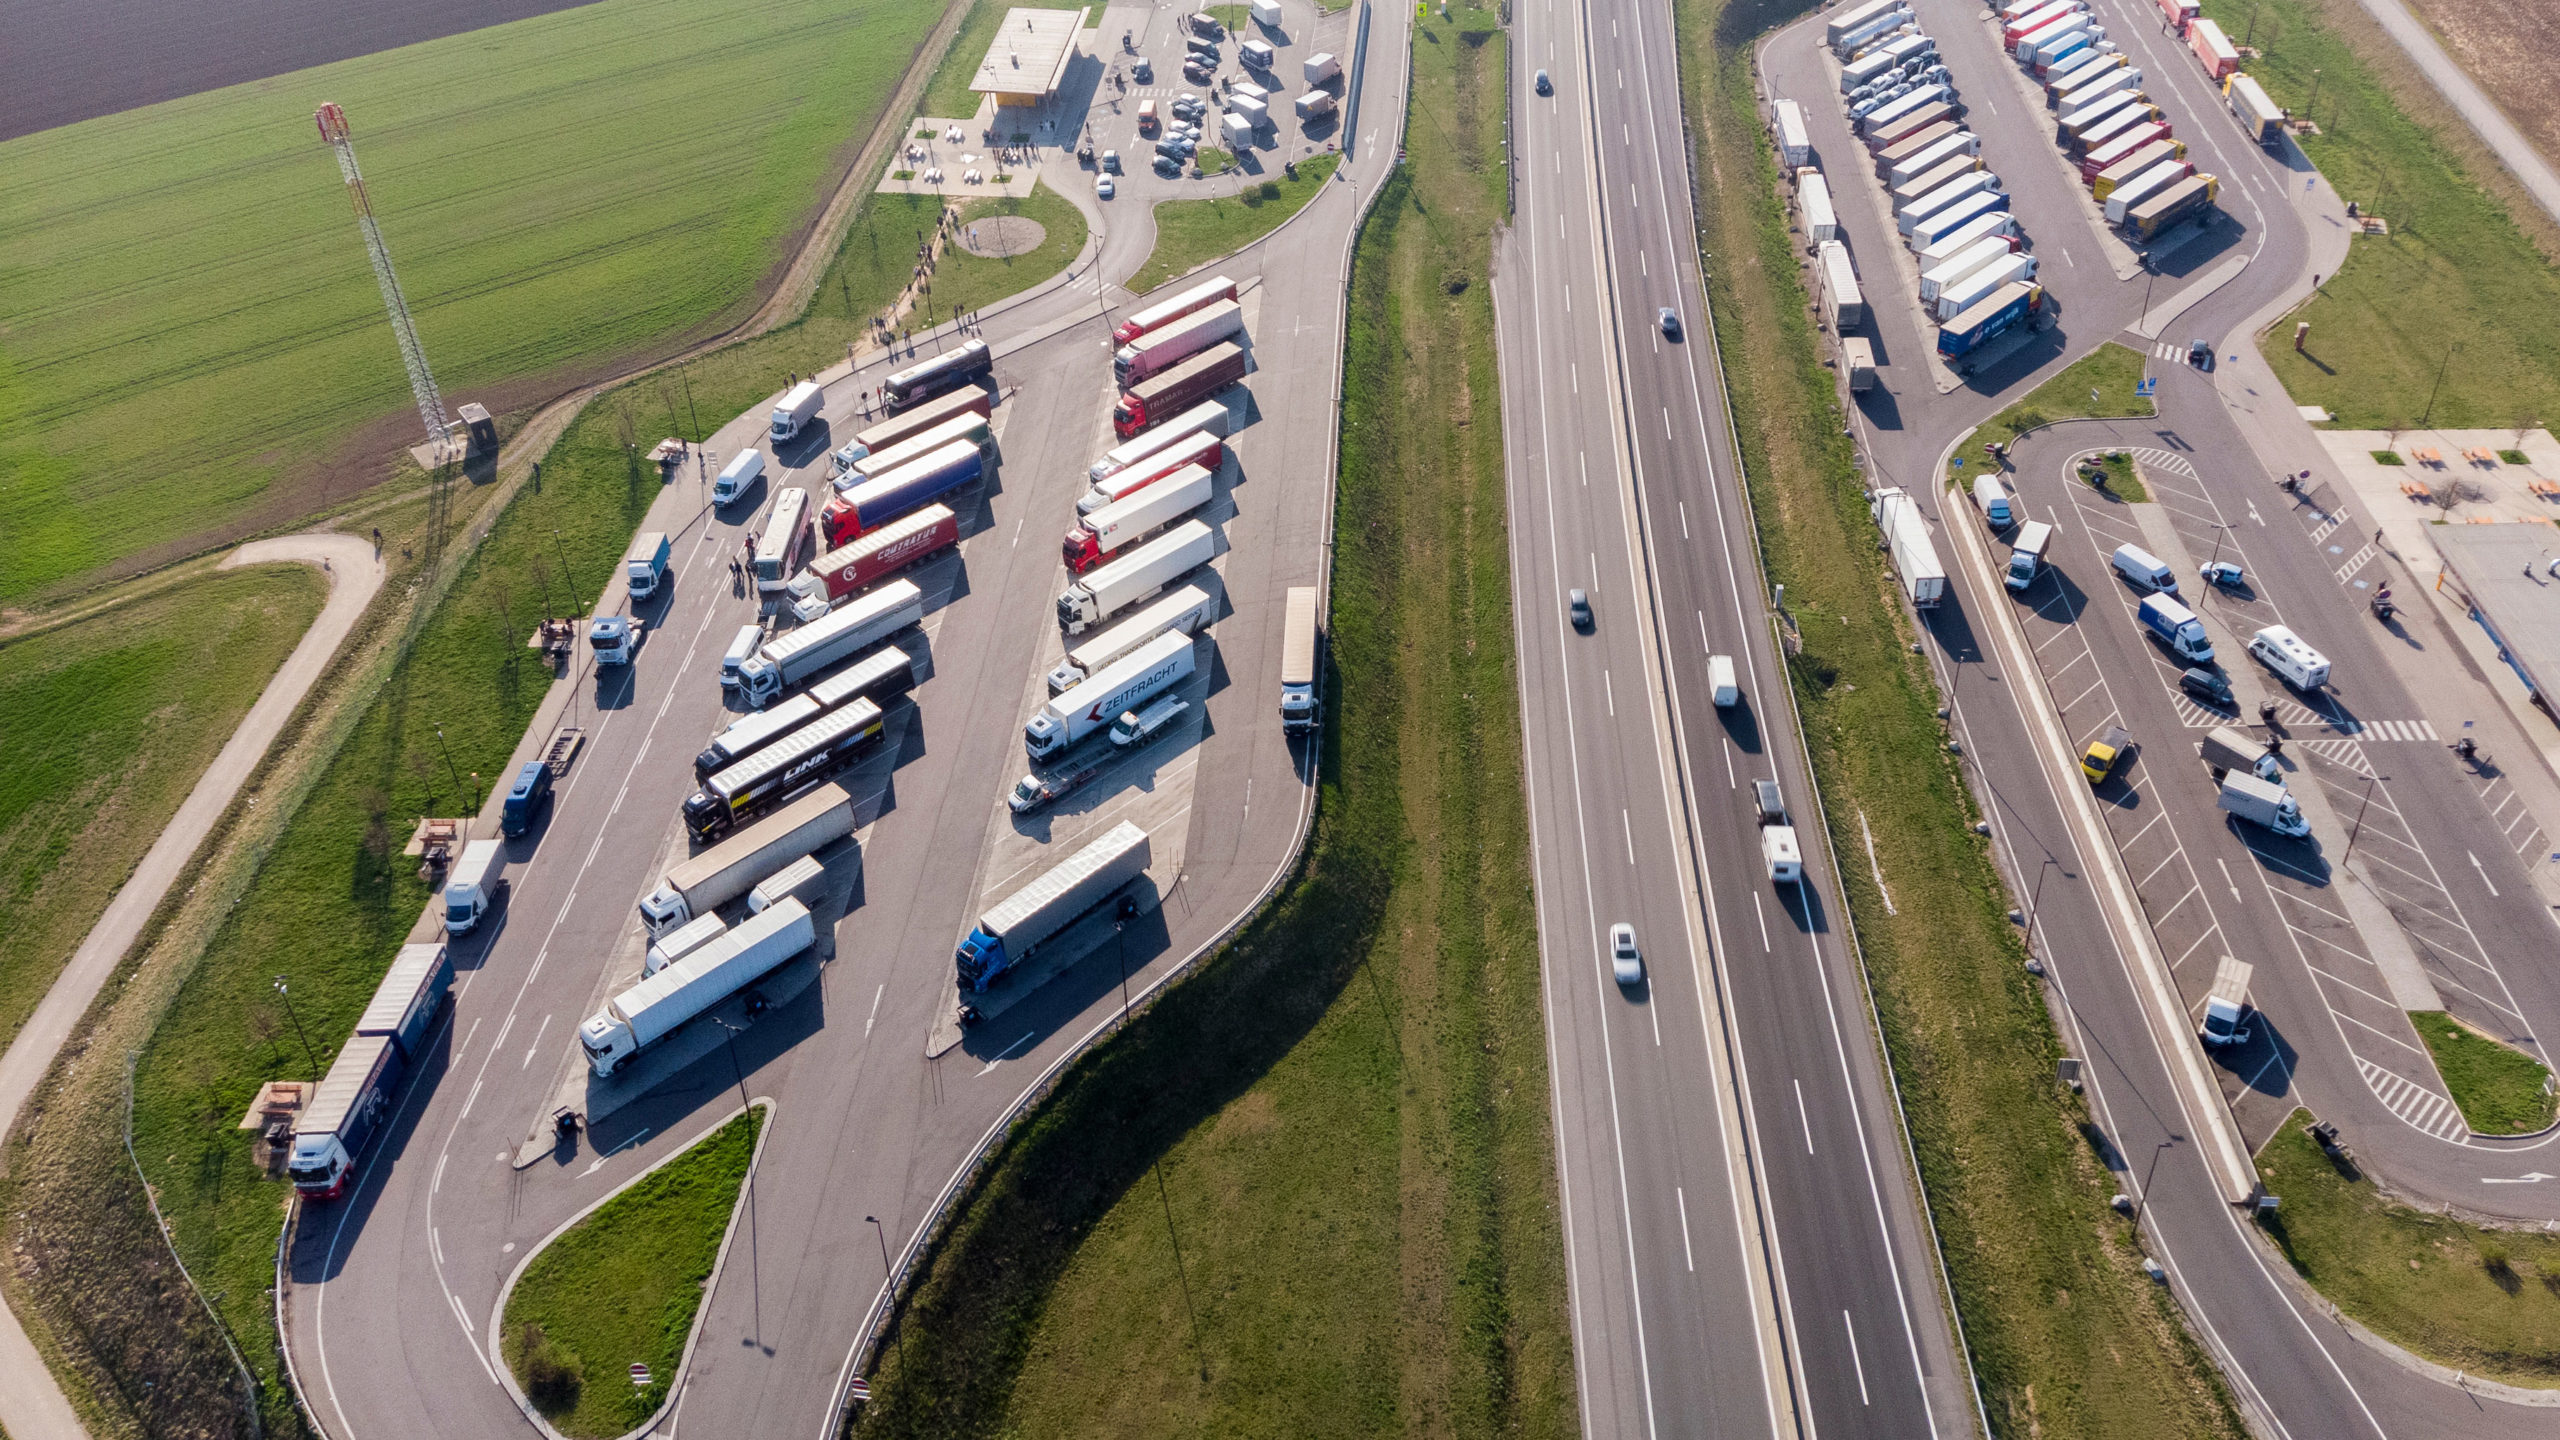 Self-driving fleet truck stop infrastructure